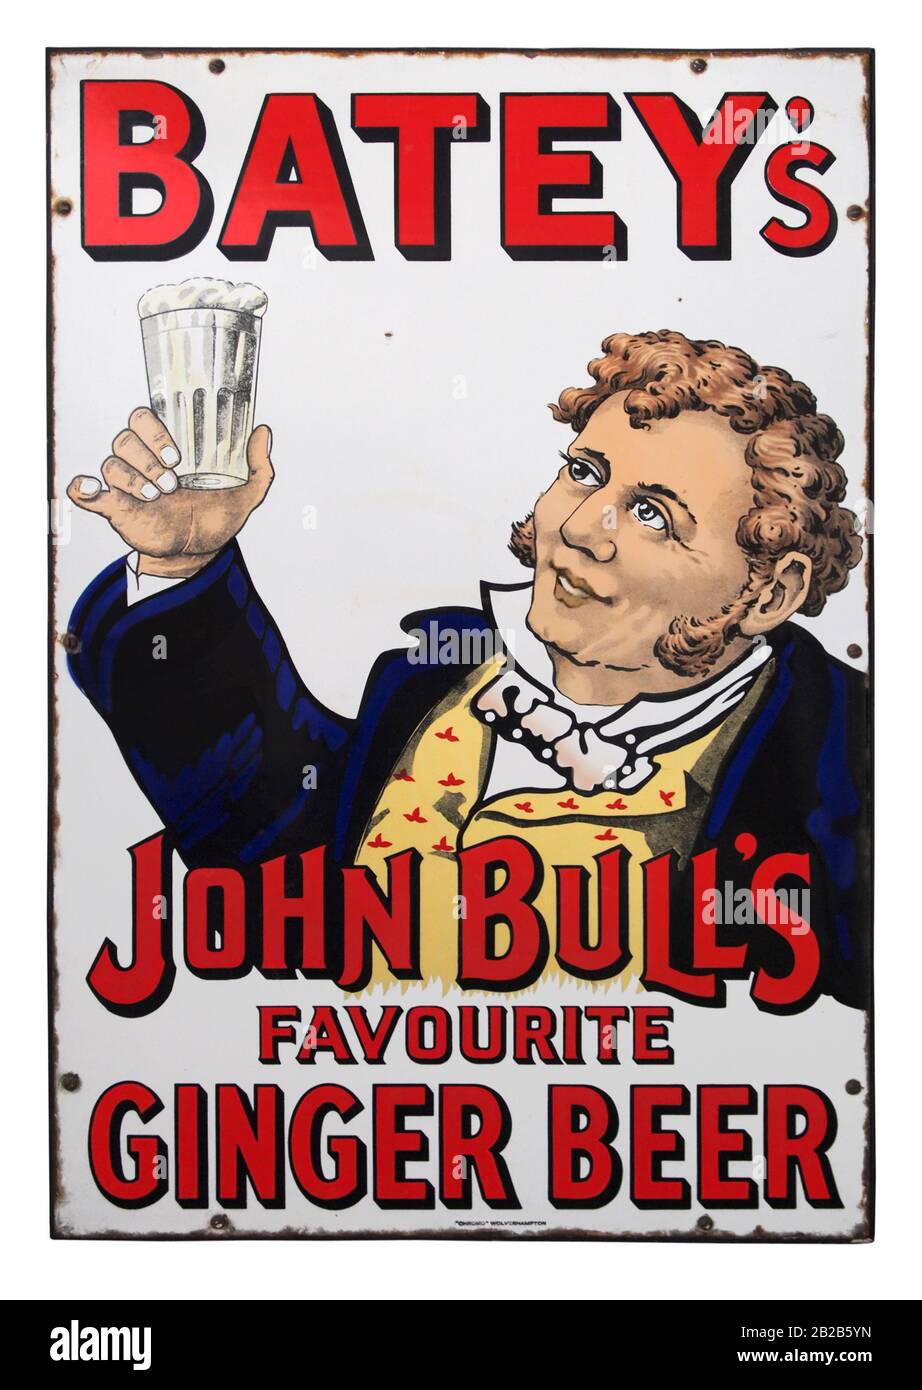 Ein farbenfrohes altes viktorianisches Emaille (Porzellan)-Schild für Bateys Ginger Beer, das darauf hinweist, dass es sich bei dem Getränk um John Bulls "Lieblingsgetränk" handelte. William Batey gründete seine Ingwer-Bierfabrik in den 1850er Jahren in Kingsland Road, Shoredisch, London, England, Großbritannien. John Bull entstand 1712 als satirischer Charakter und wurde von Dr. John Arbuthnot, einem Freund von Jonathan Swift und Alexander Pope, geschaffen. Die Figur wurde als typischer englischer Landbewohner dargestellt. Er war meist in einer buffarbenen Weste und einem einfachen Froschmantel abgebildet. Später wurde die Weste oft mit einem Flaggendesign von Union Jack gezeigt. Stockfoto